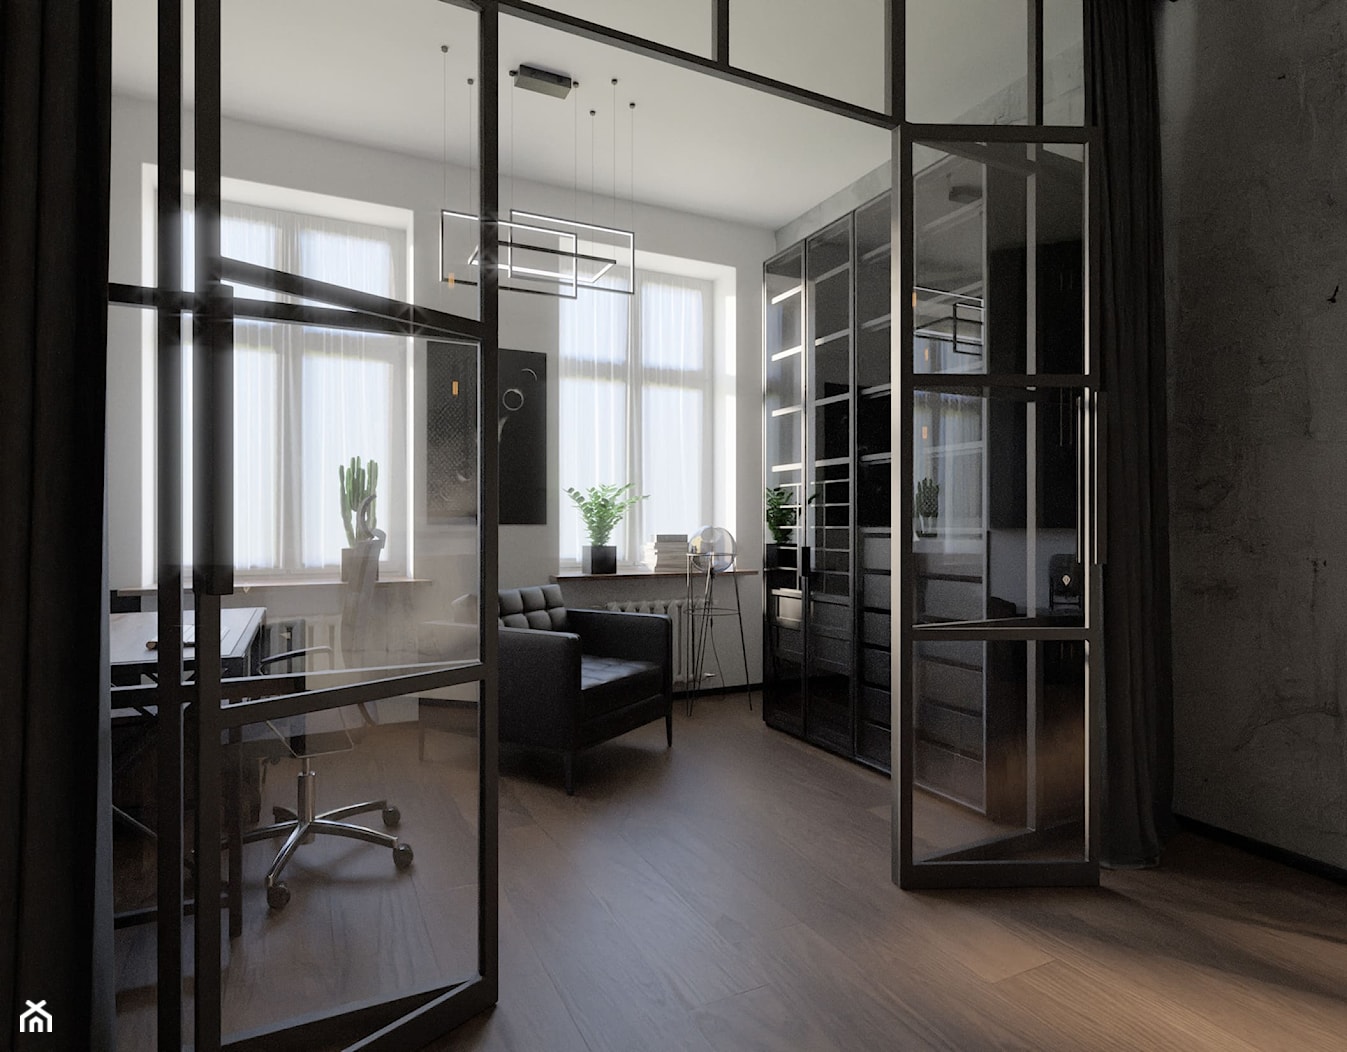 Biuro z metalowymi drzwiami w stylu loft/ industrial - zdjęcie od Holi Home - Homebook